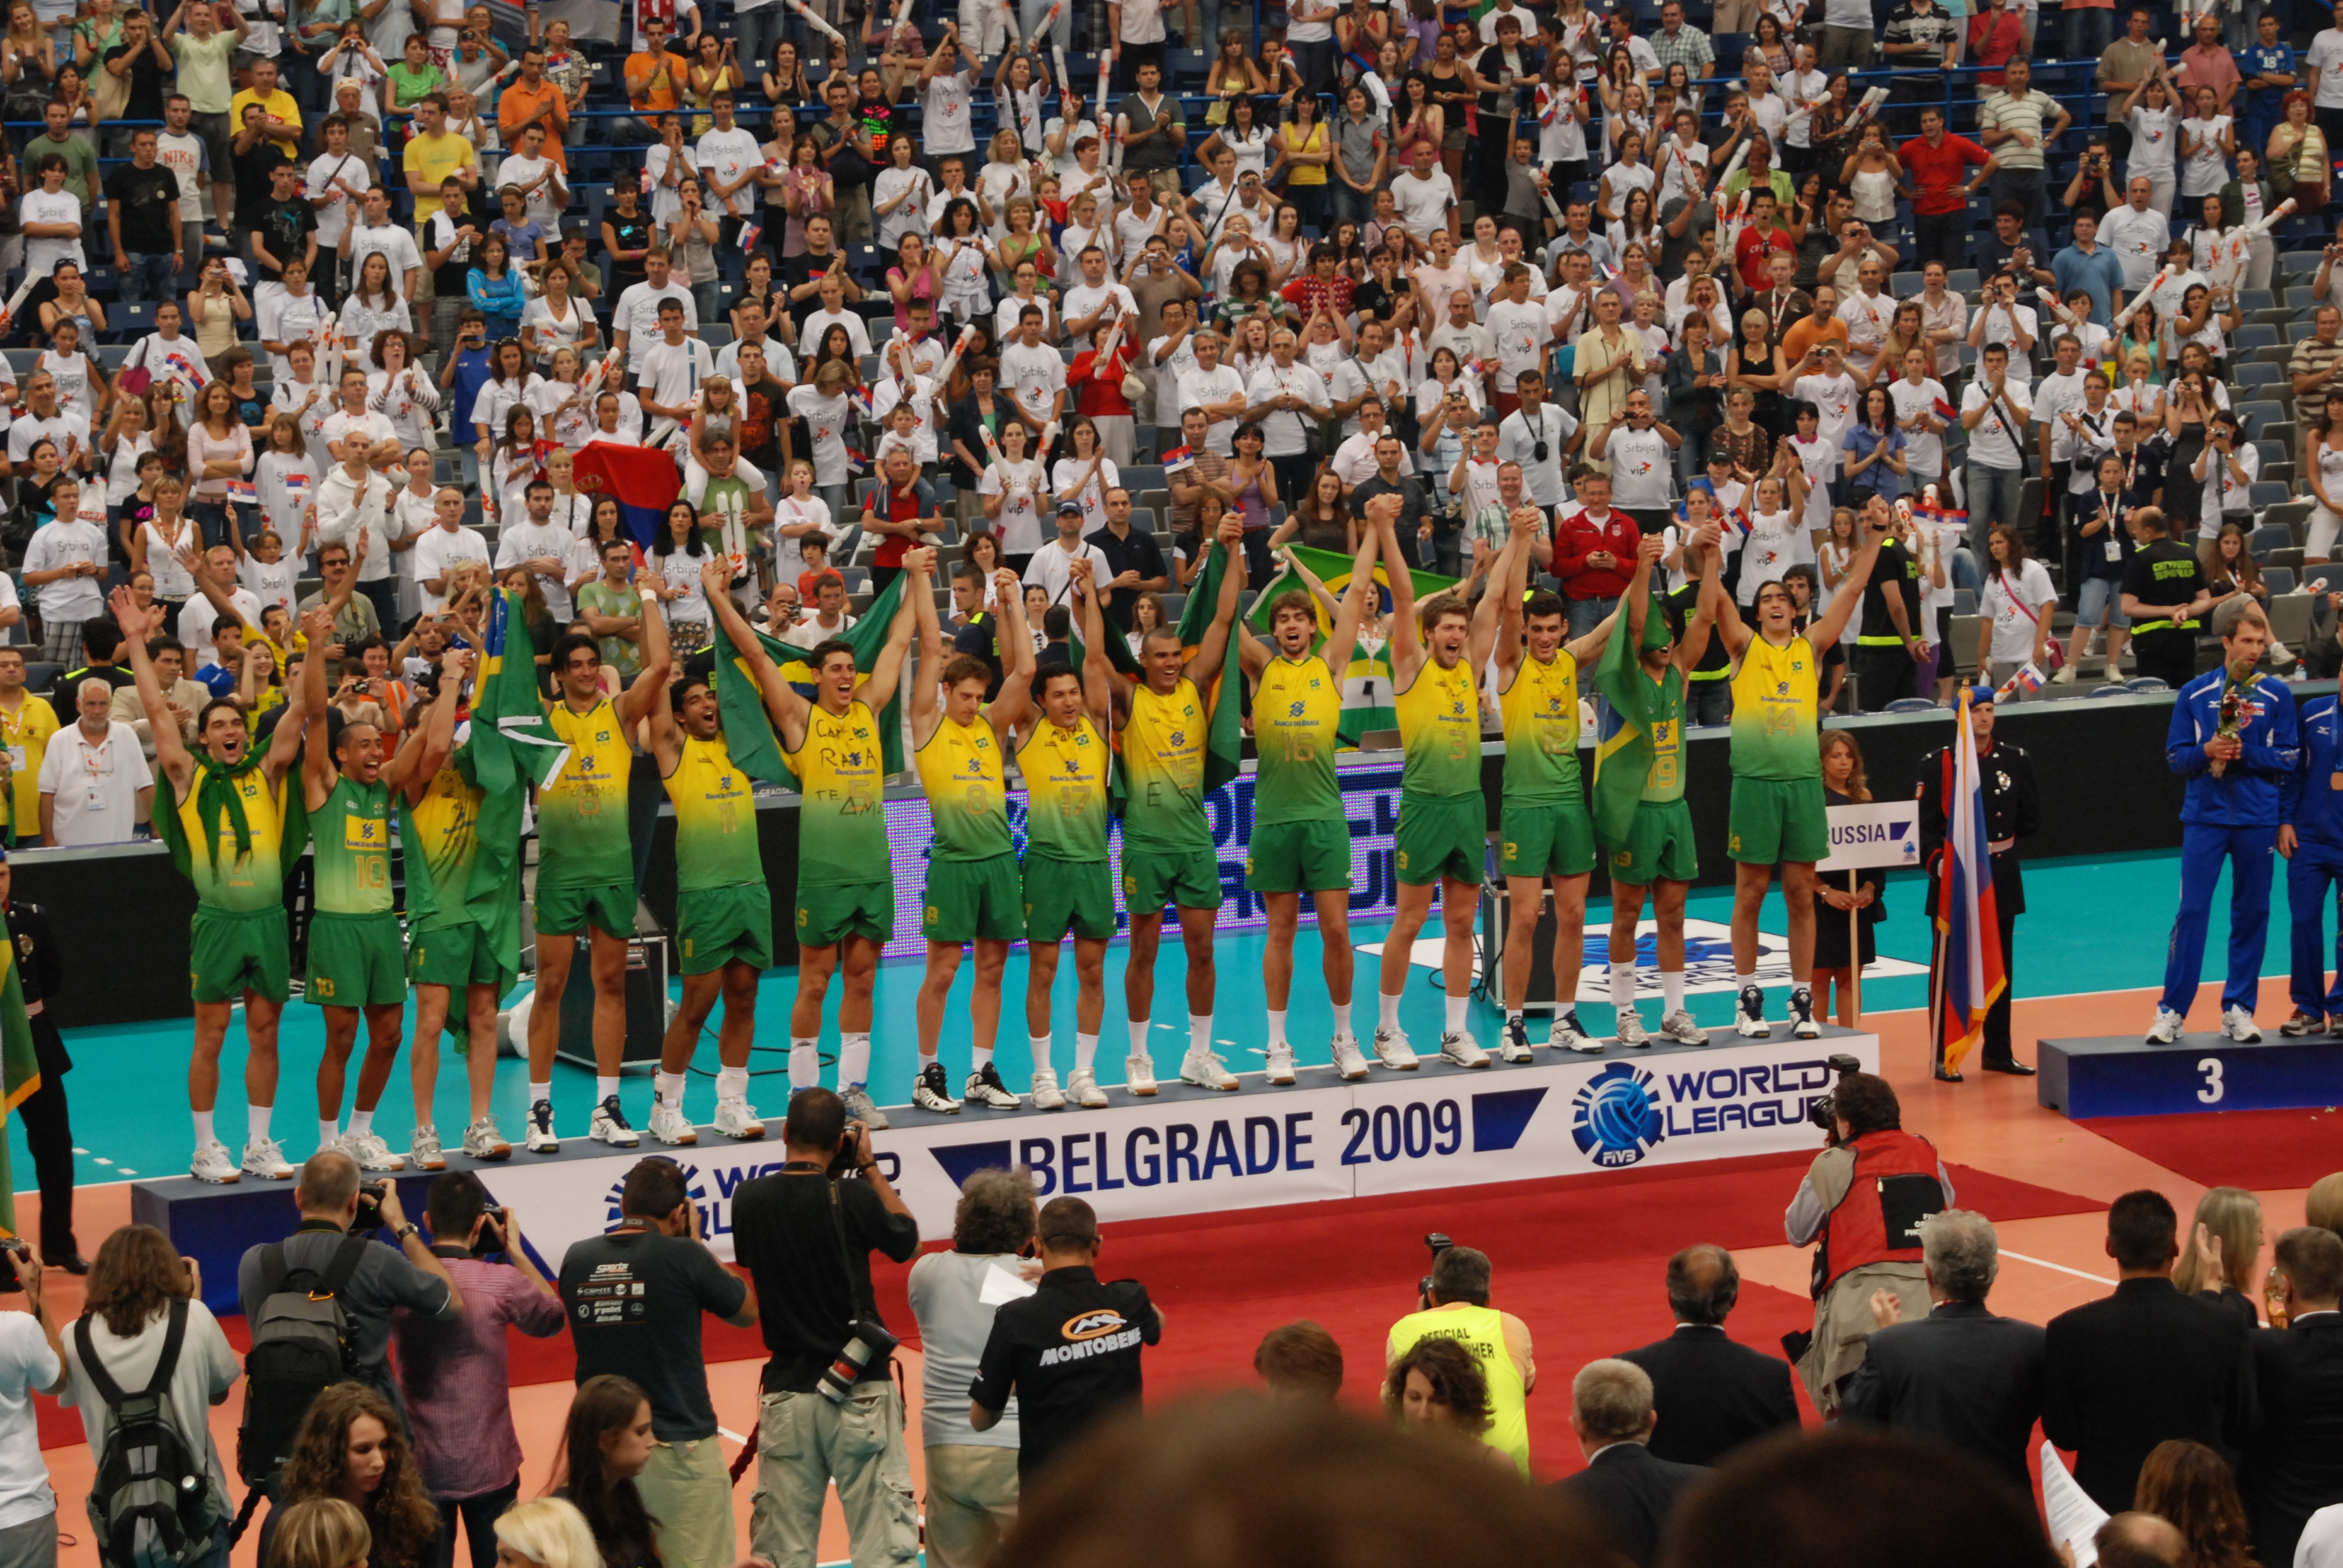 Lista de vencedores de títulos mundiais de voleibol – Wikipédia, a